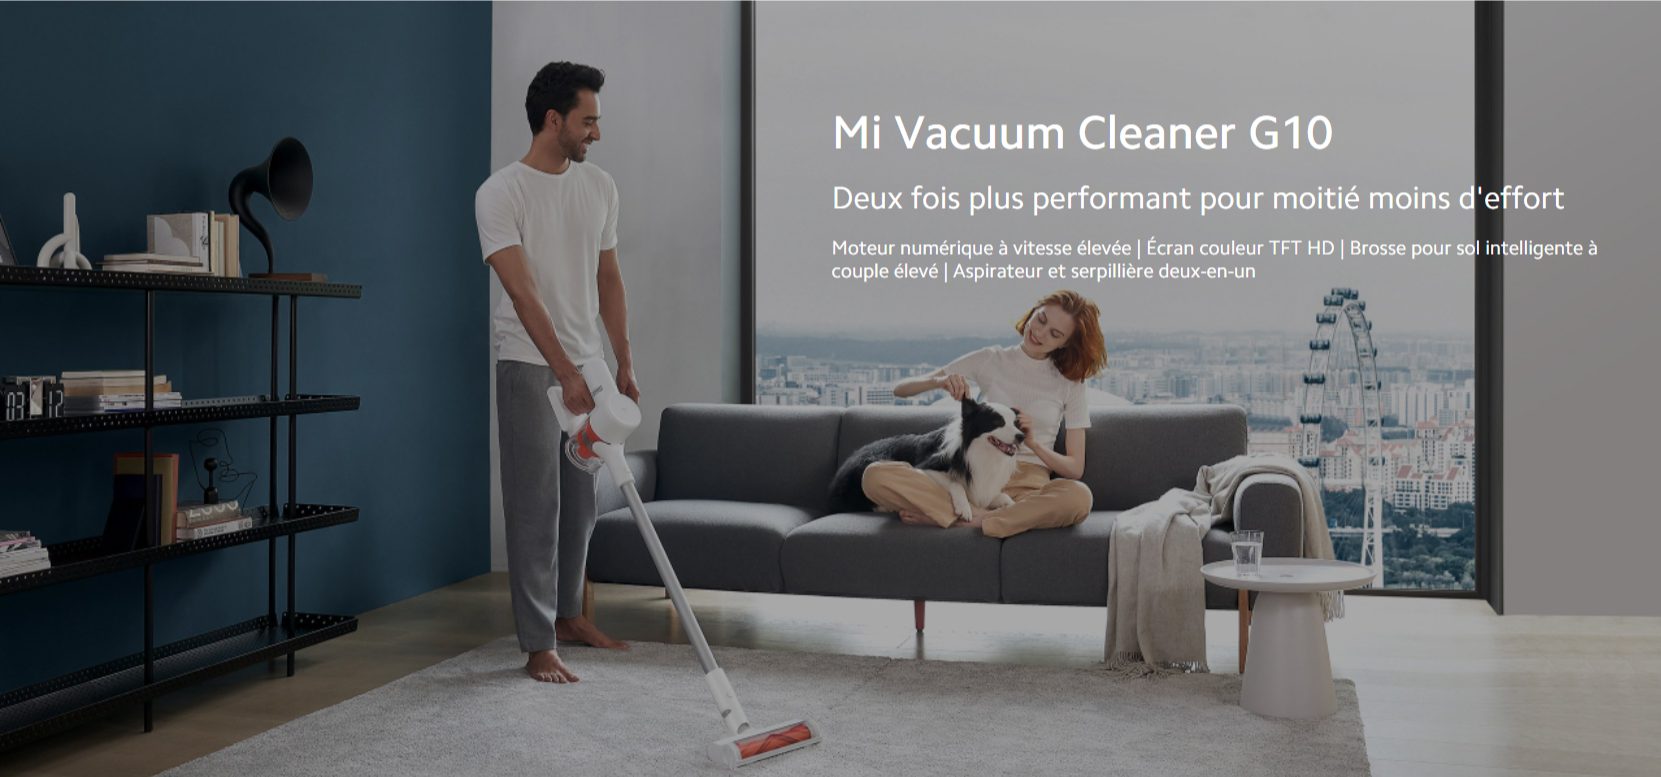 Mi Vacuum Cleaner G10 